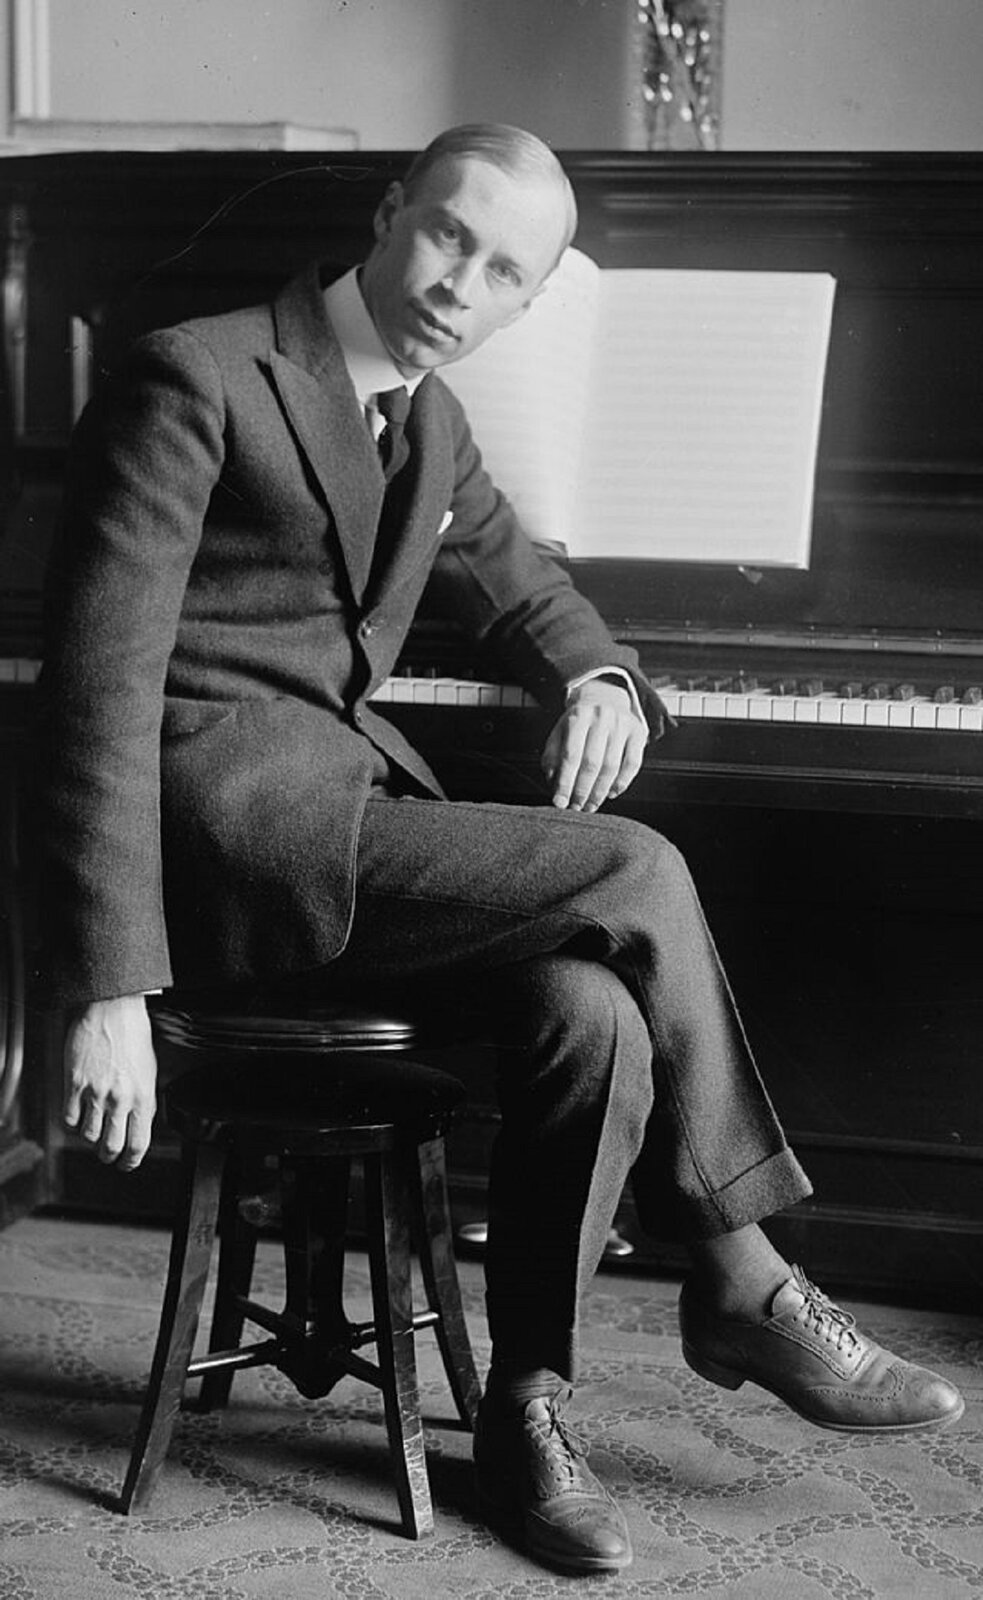 Ilustracja przedstawia Sergiusza Prokofiewa, który był rosyjskim kompozytorem, pianistą-wirtuozem oraz dyrygentem, jednym z najważniejszych twórców awangardy pierwszej połowy XX w. Mężczyzna w średnim wieku siedzi przy pianinie. Ubrany elegancko w szary garnitur i białą marynarkę.